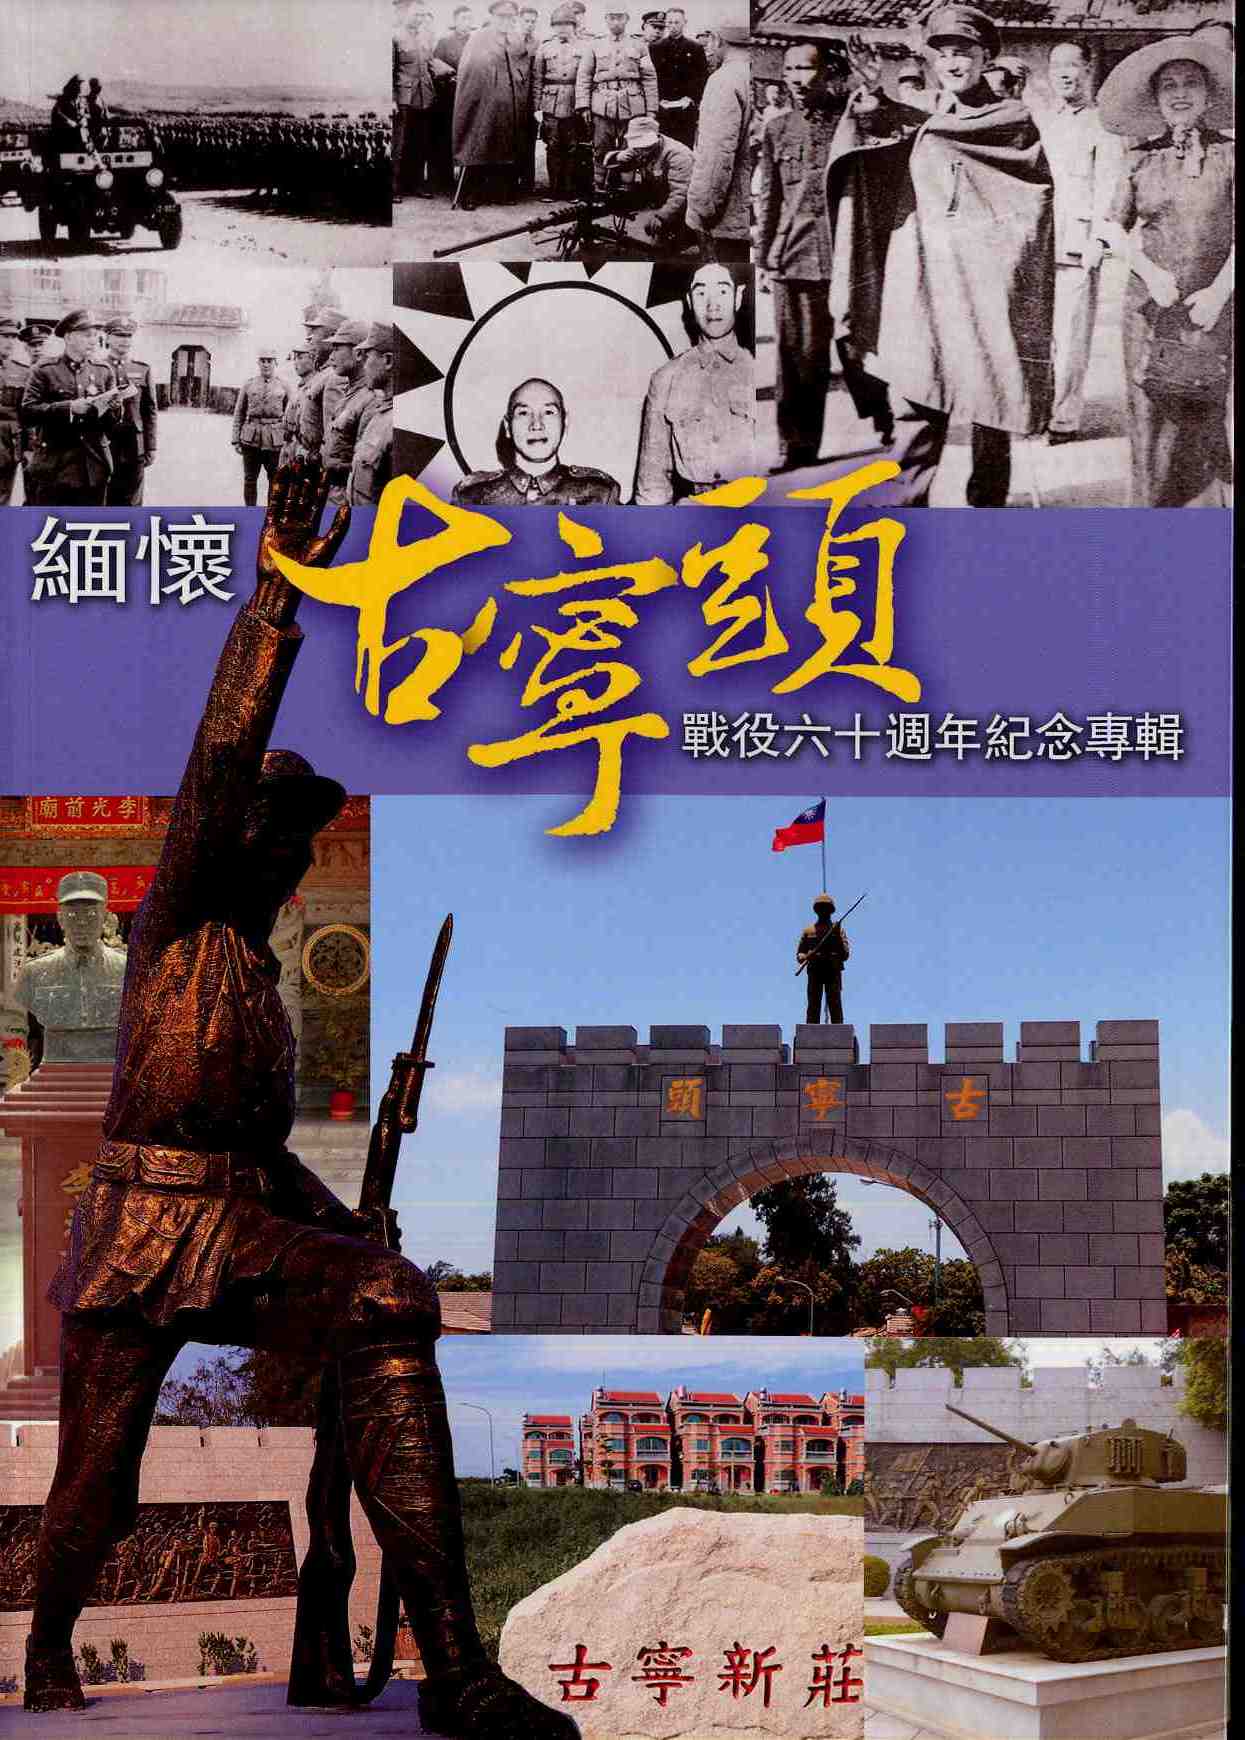 緬懷古寧頭戰役六十週年紀念專輯